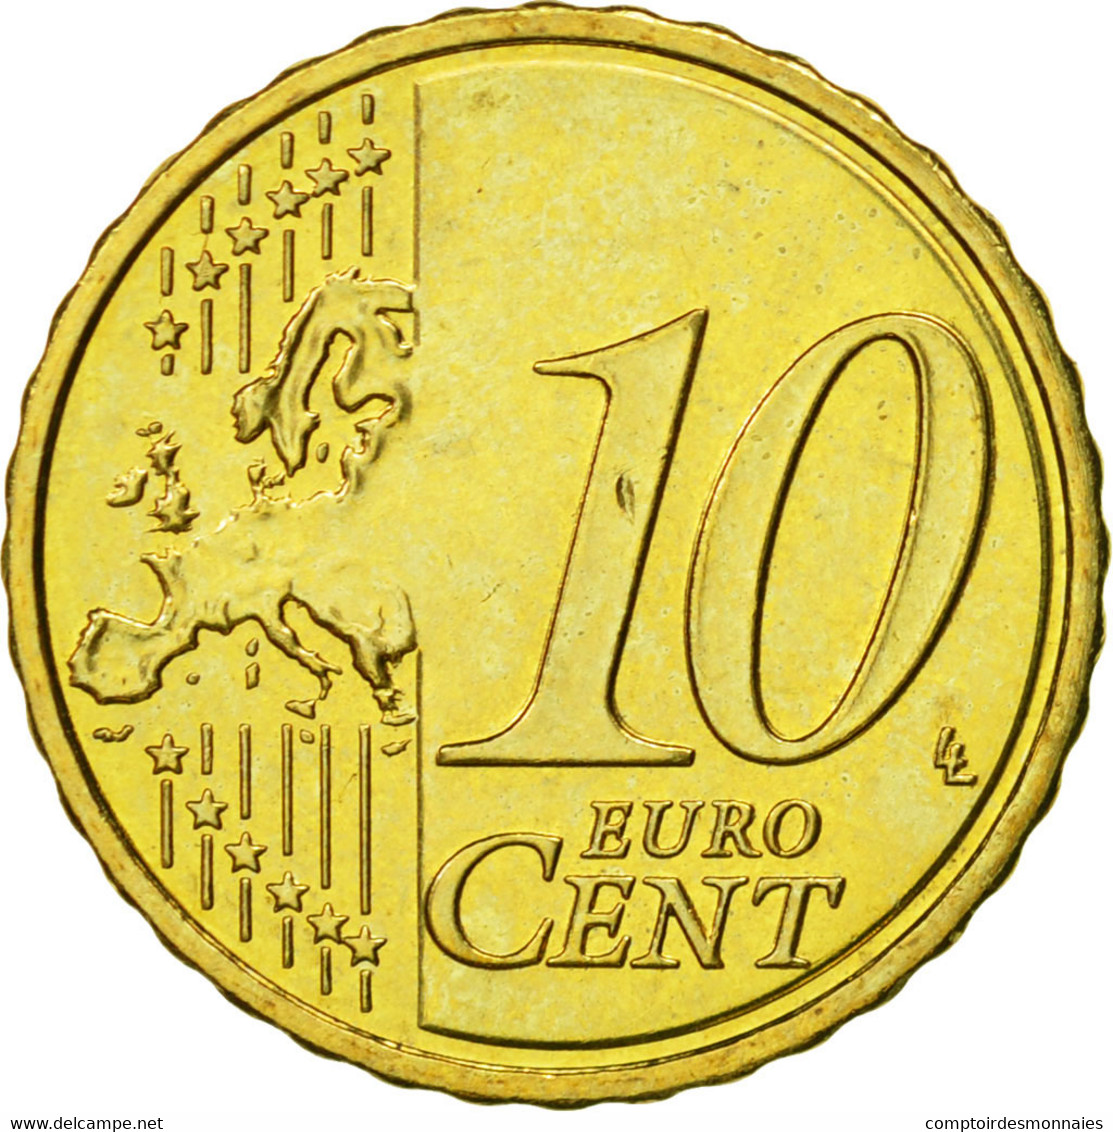 Chypre, 10 Euro Cent, 2009, FDC, Laiton, KM:81 - Chypre